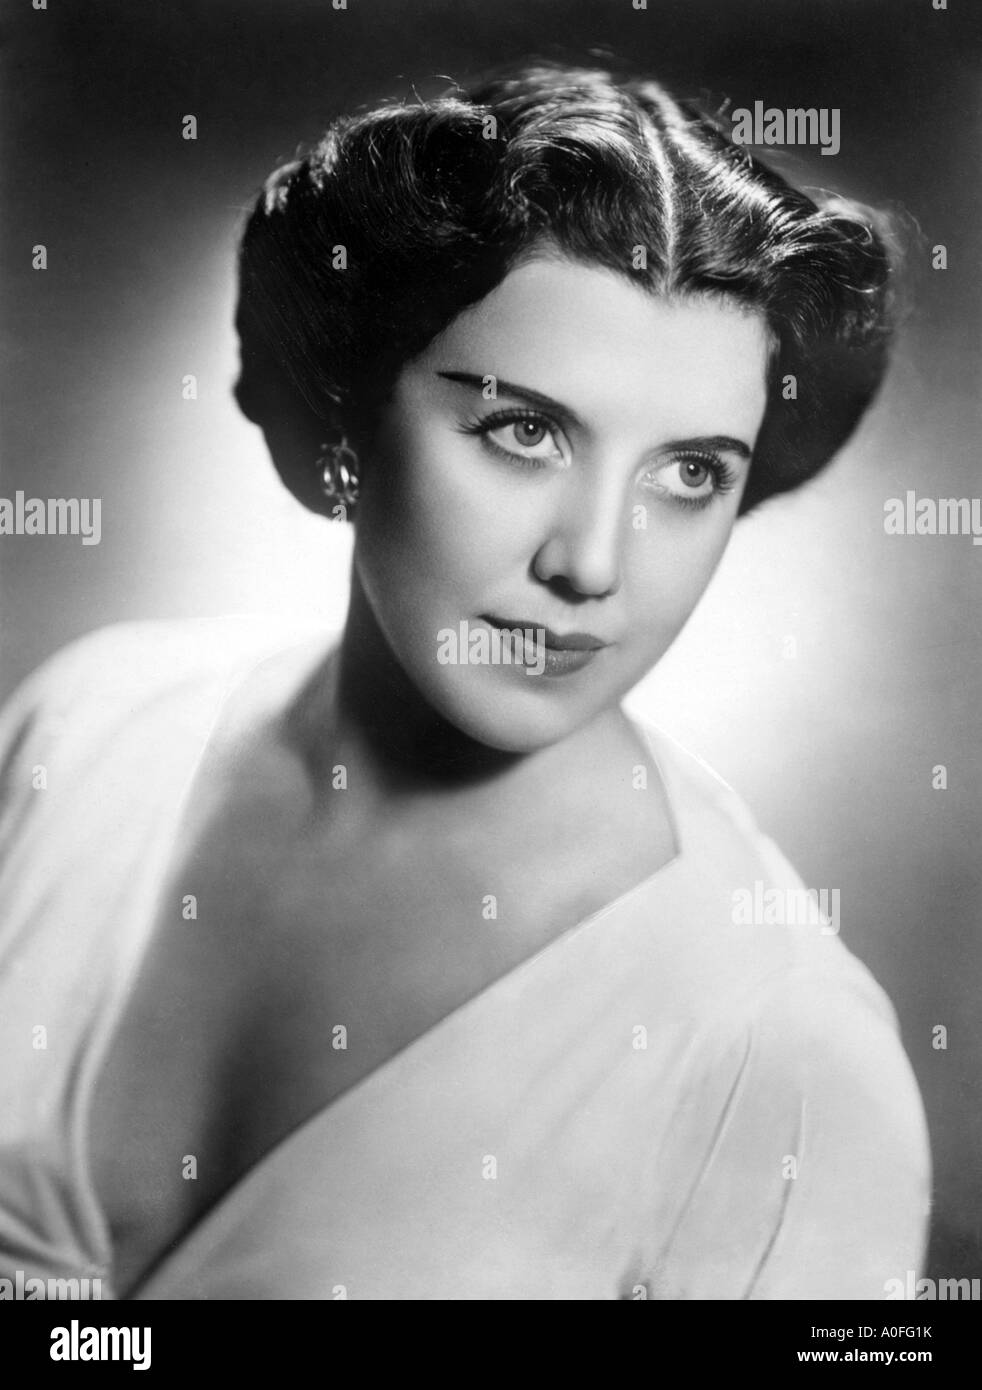 Rose Bampton mezzo-soprano Stock Photo - Alamy